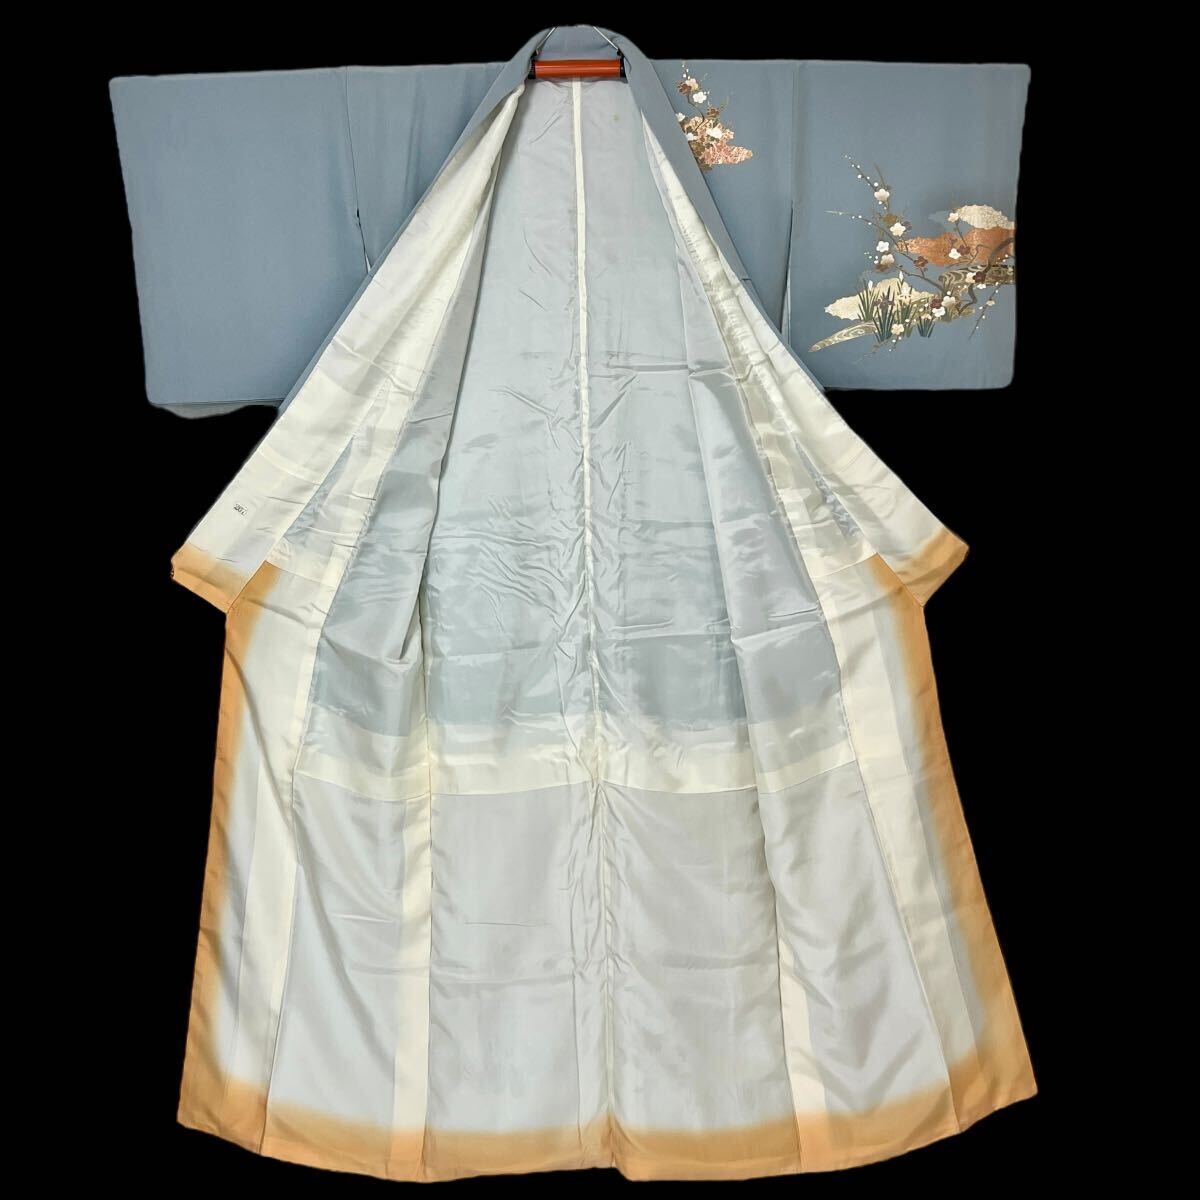 訪問着 正絹 金彩 袷着物 着物 きもの フォーマル着物 リサイクル着物 kimono 中古 仕立て上がり 身丈168cm 裄丈66cm